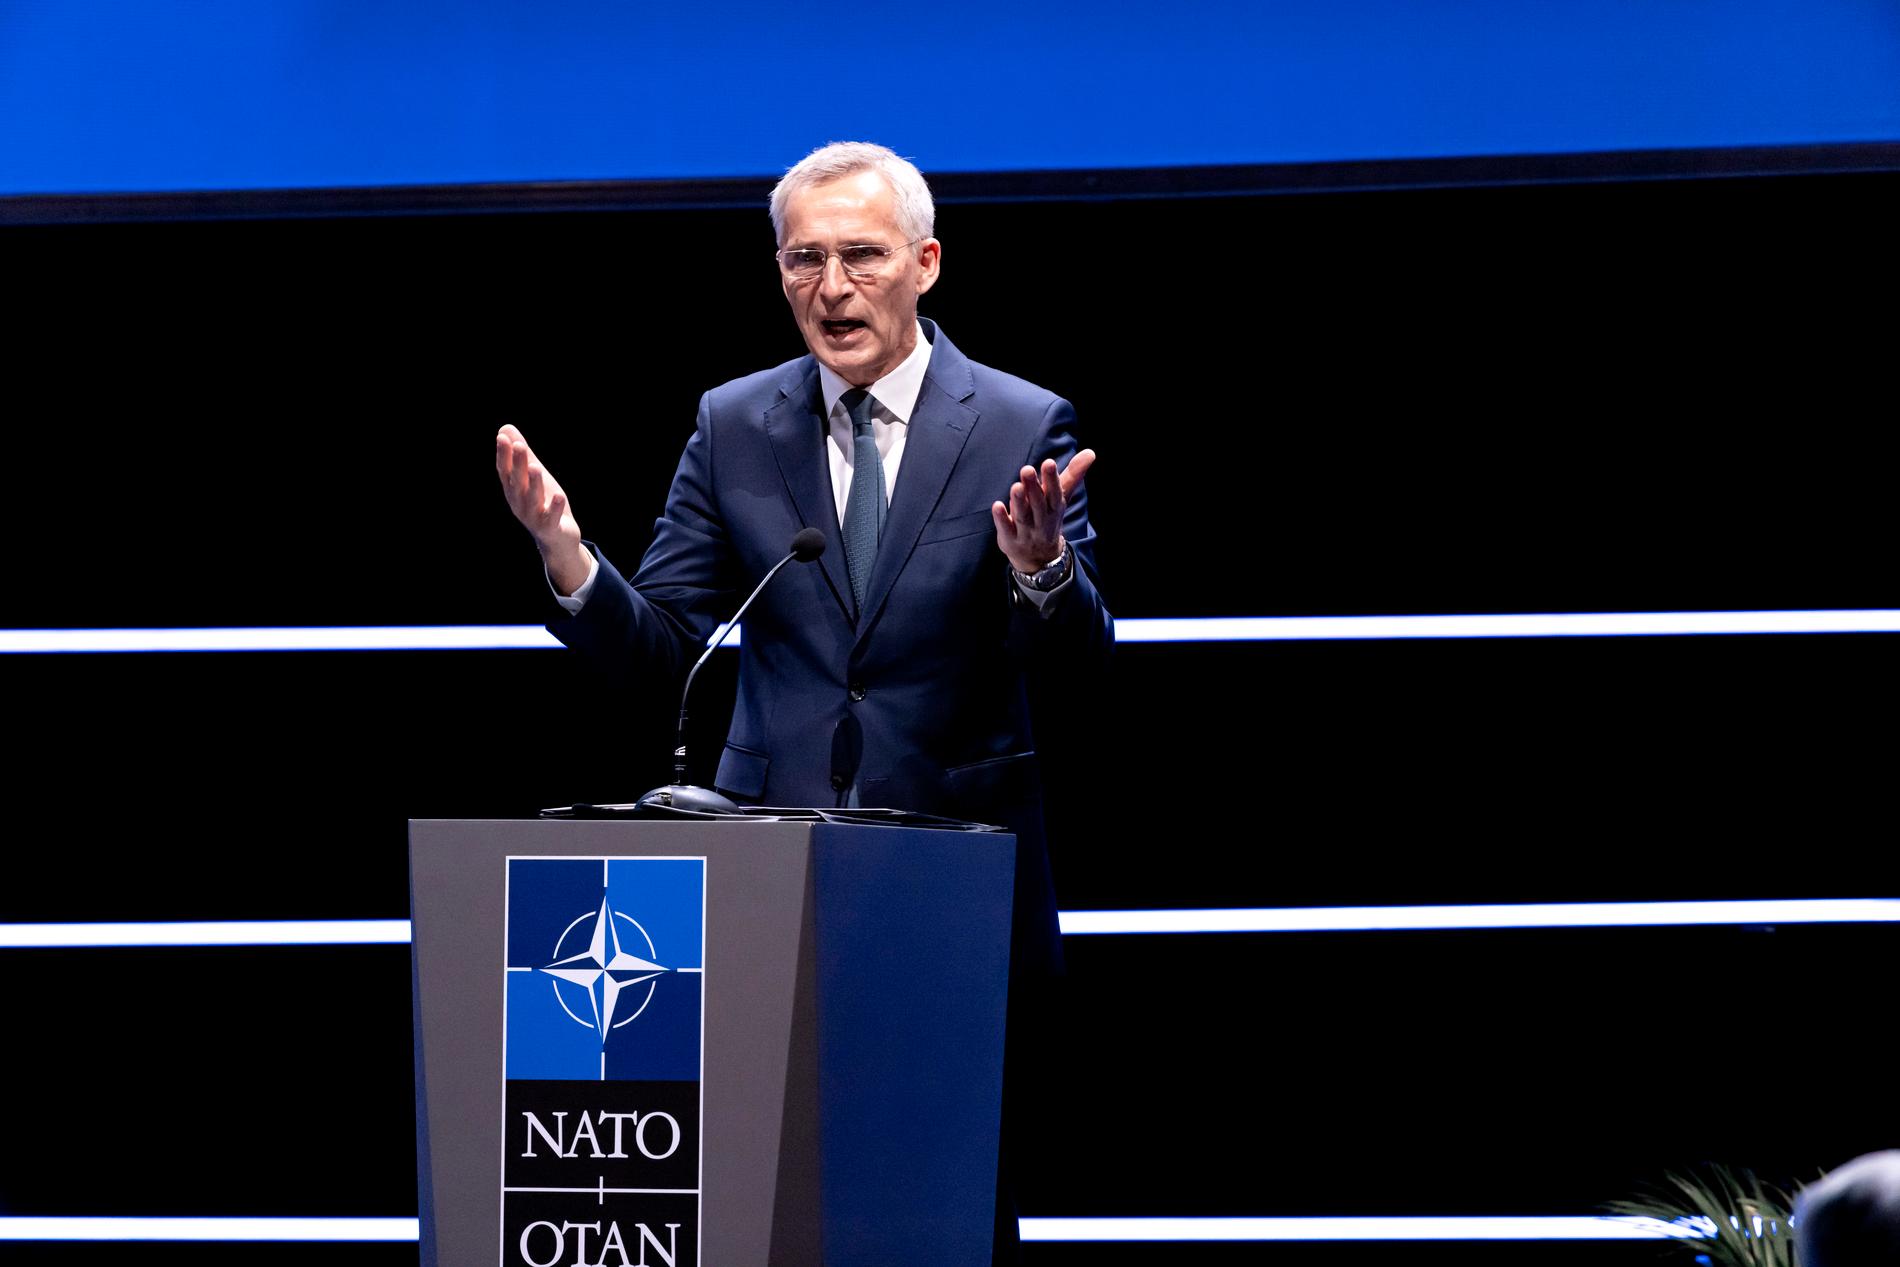 Generalsekreteraren Jens Stoltenberg var en av inledningstalarna på Nato Industry Forum under onsdagen.